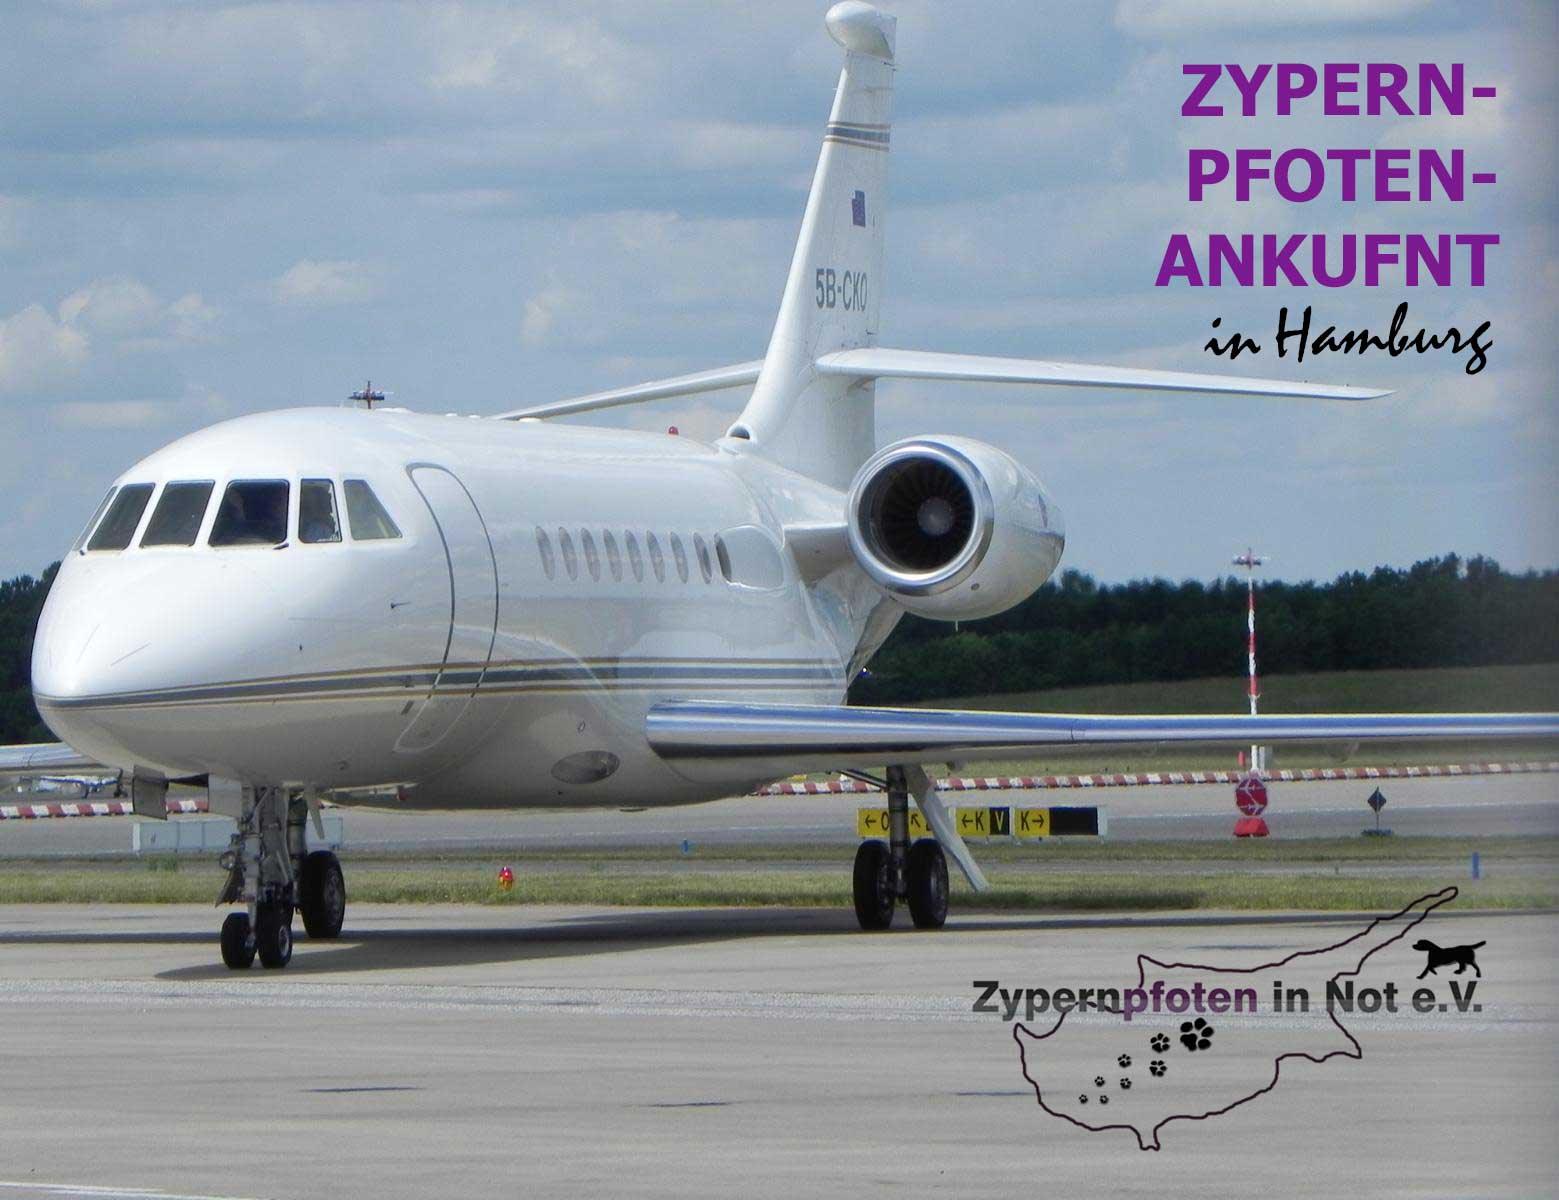 Ankunft aus Zypern am Geschäftsfliegerzentrum in Hamburg mit Zypernpfoten